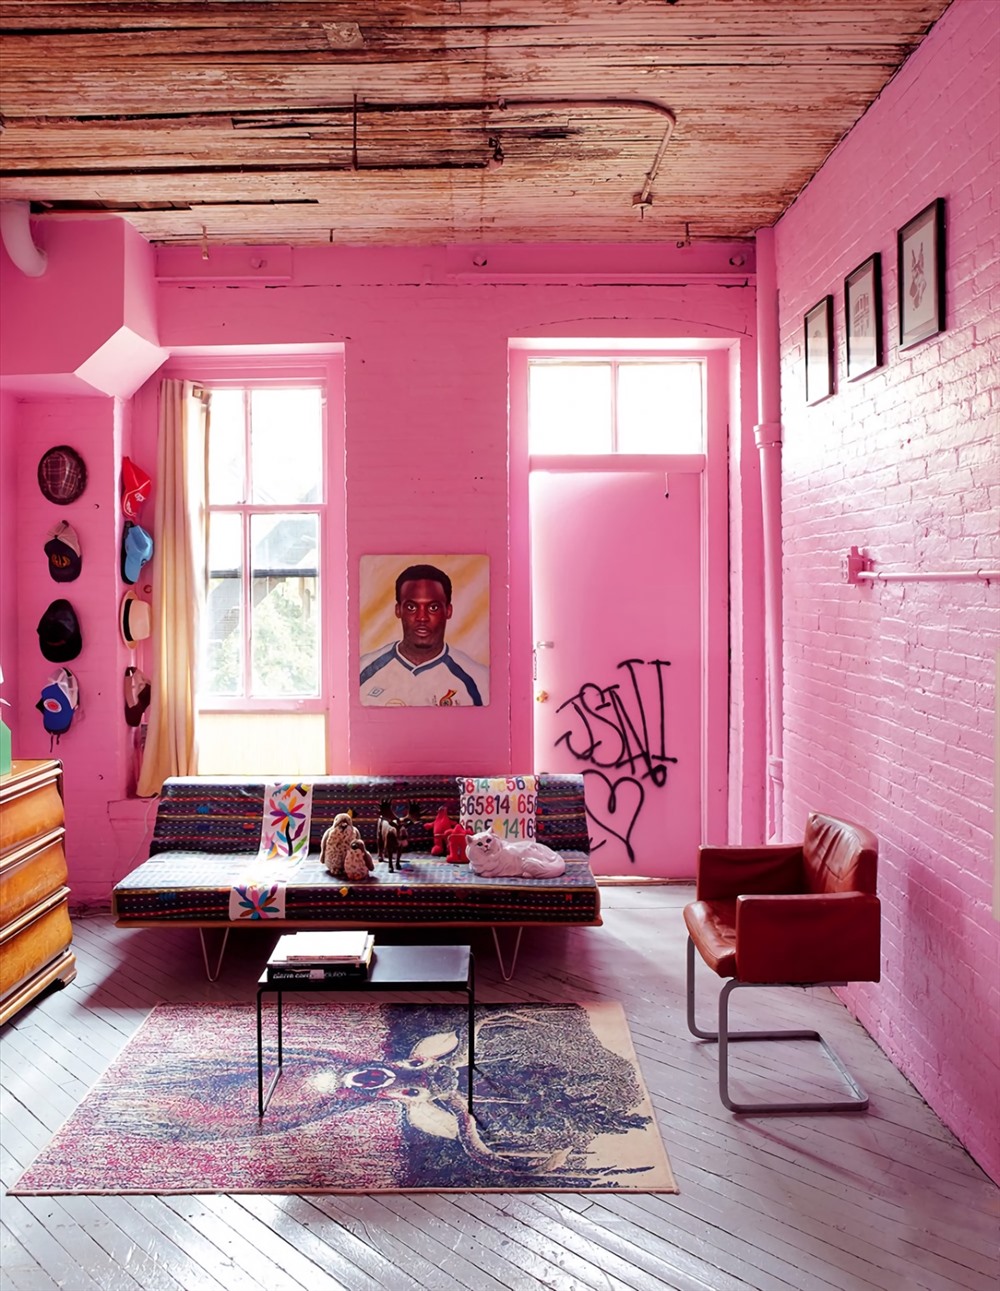 Phòng khách này tràn ngập màu hồng tươi tắn. Gia chủ chuộng kiểu sơn kín tường để tạo sự ấm áp hay nóng bỏng. Ngay cả cửa sổ và cửa ra vào cũng được sơn hồng.